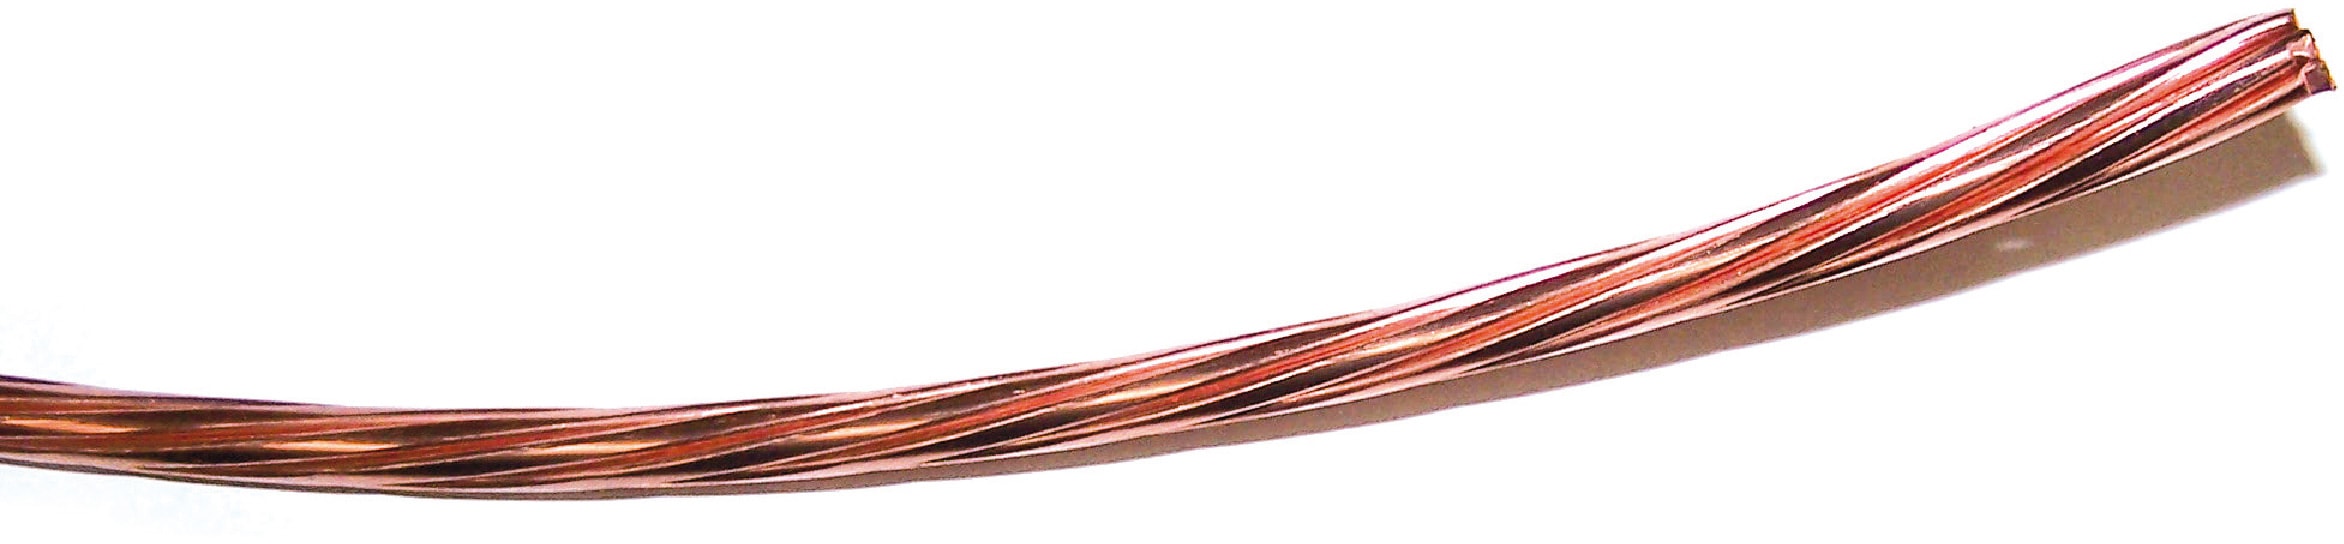 Cable Cablette Cuivre nu 70 mm2